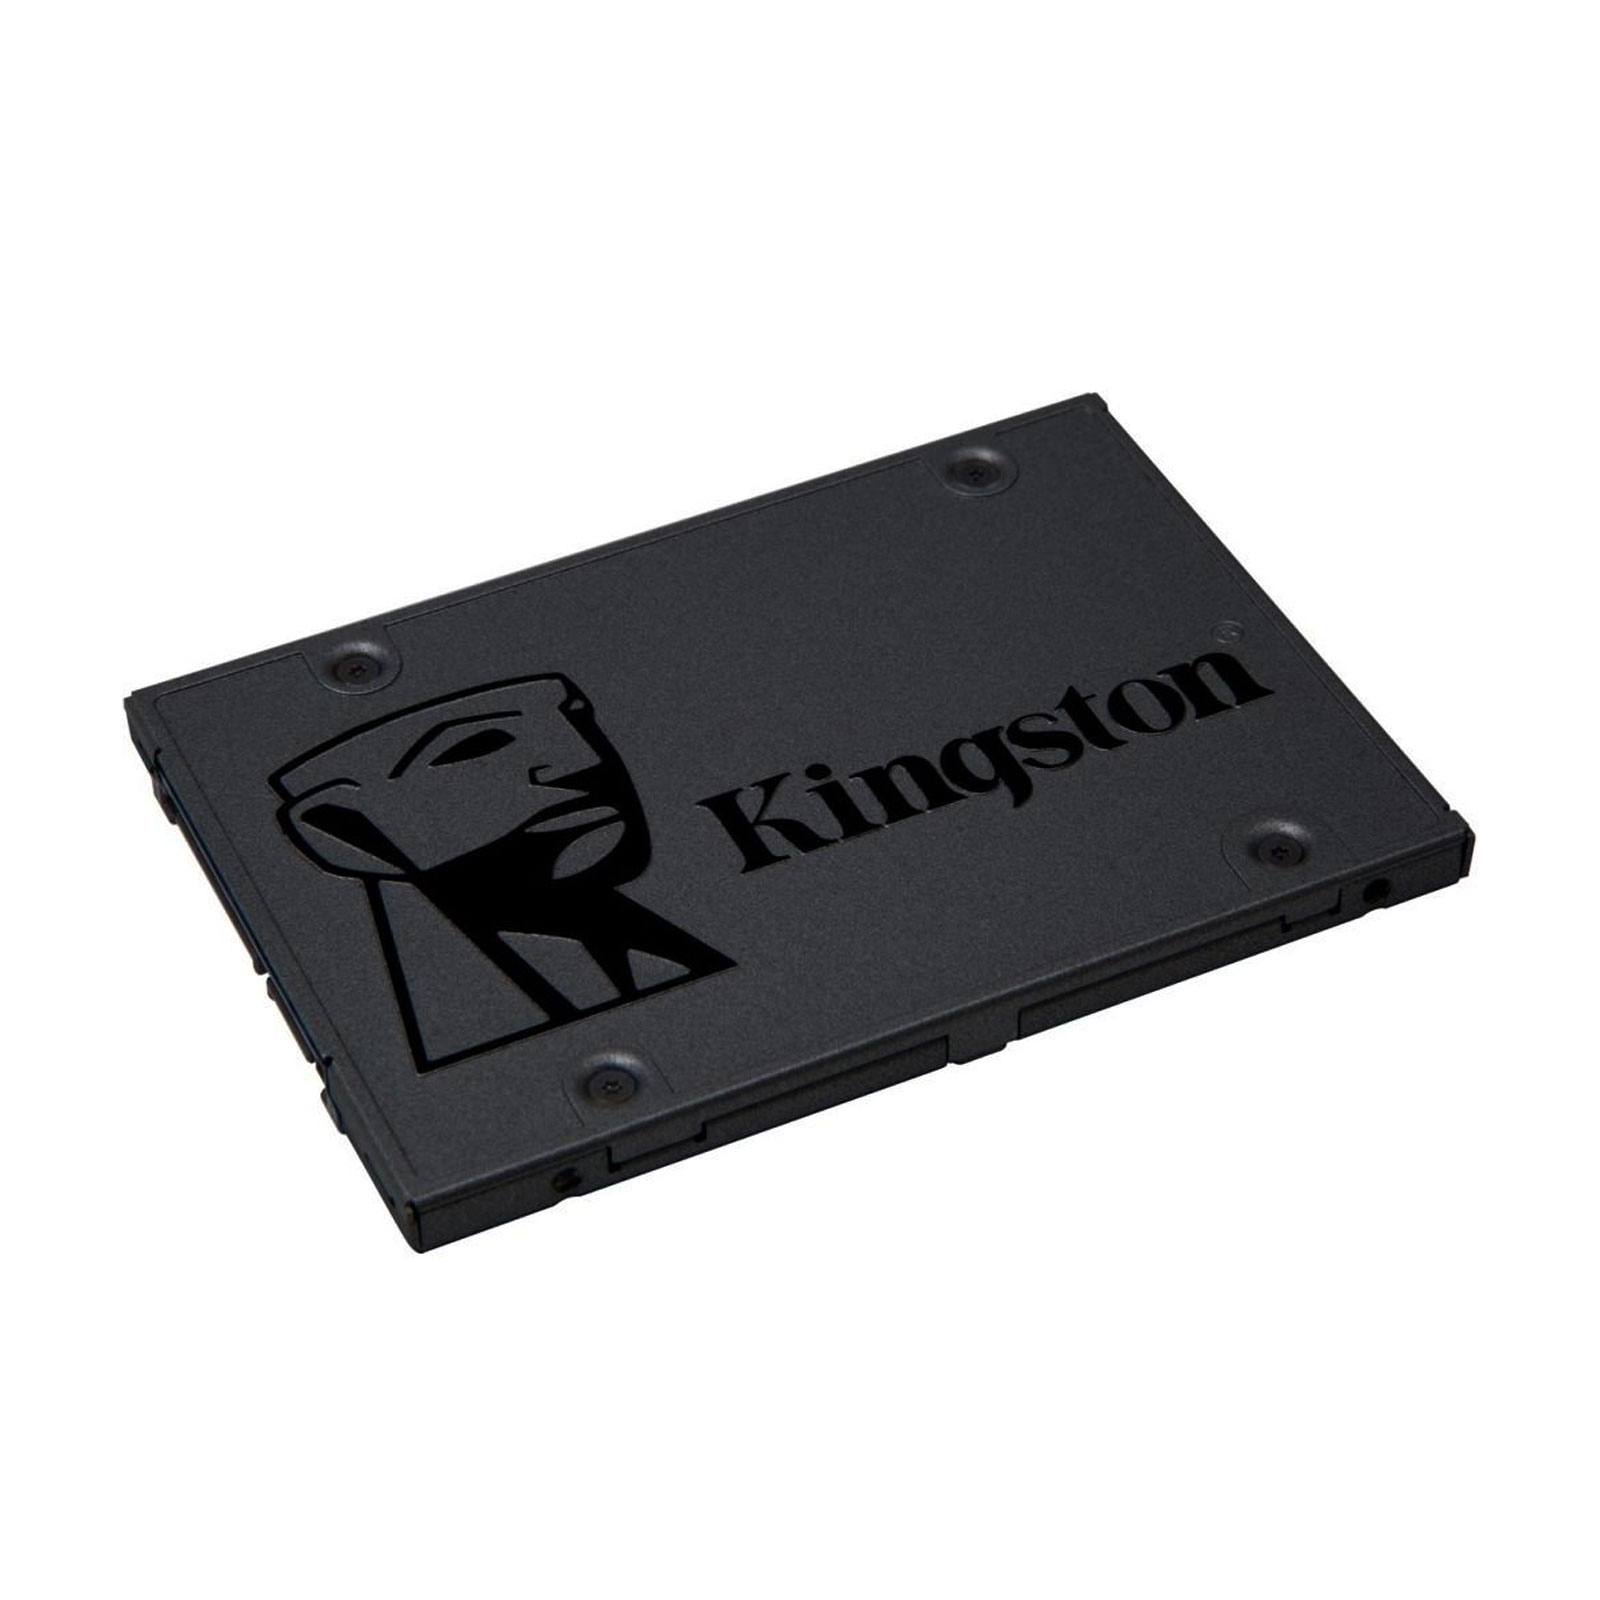 KINGSTON SSD A400 240GB Sata3 SA400S37/240G Interne SSD-Festplatte